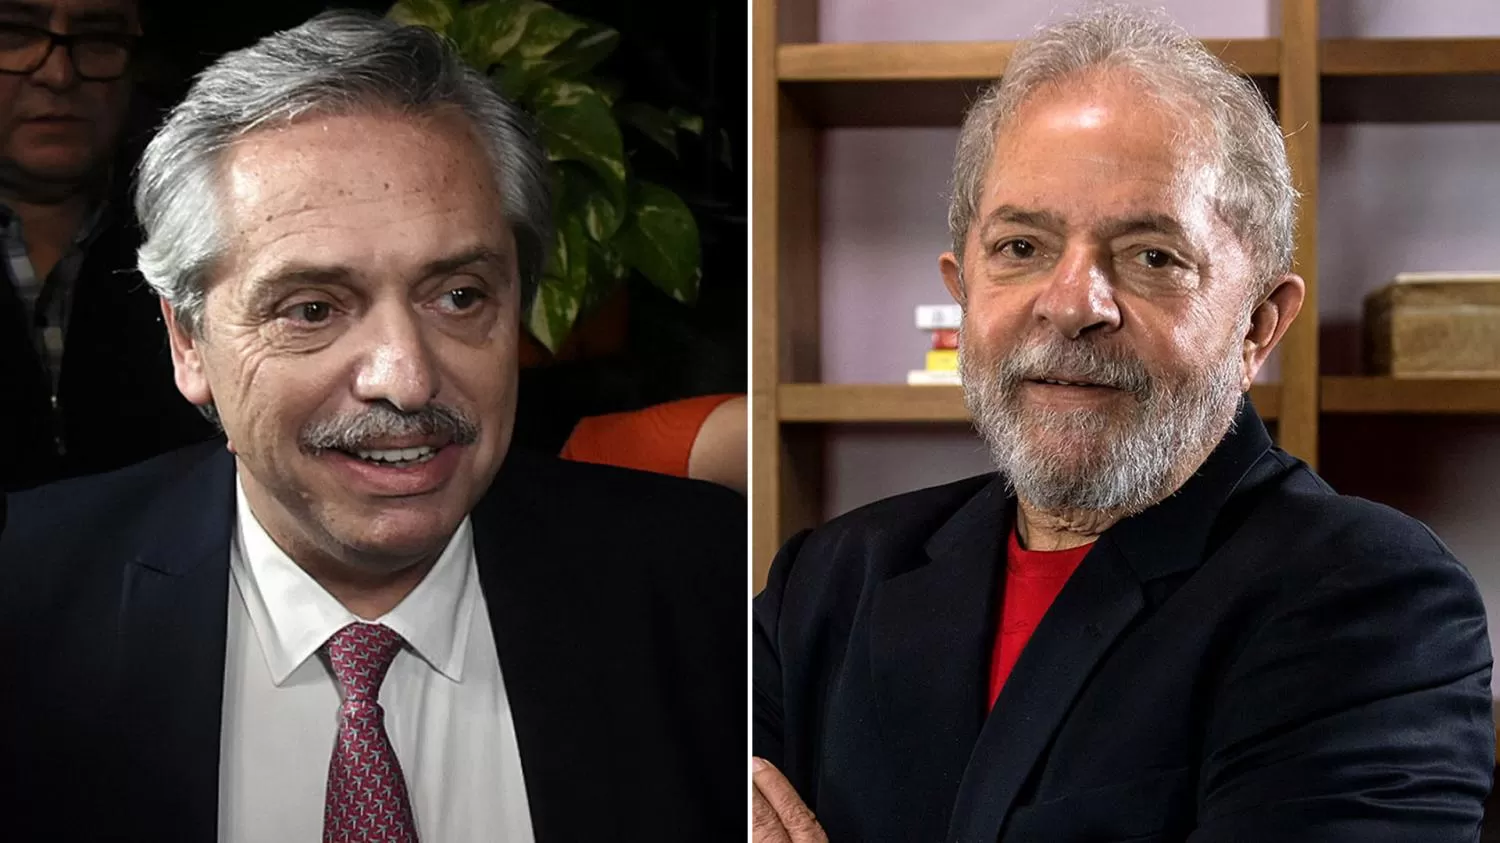 El Presidente se solidarizó con Lula y pidió terminar con las arbitrariedades judiciales